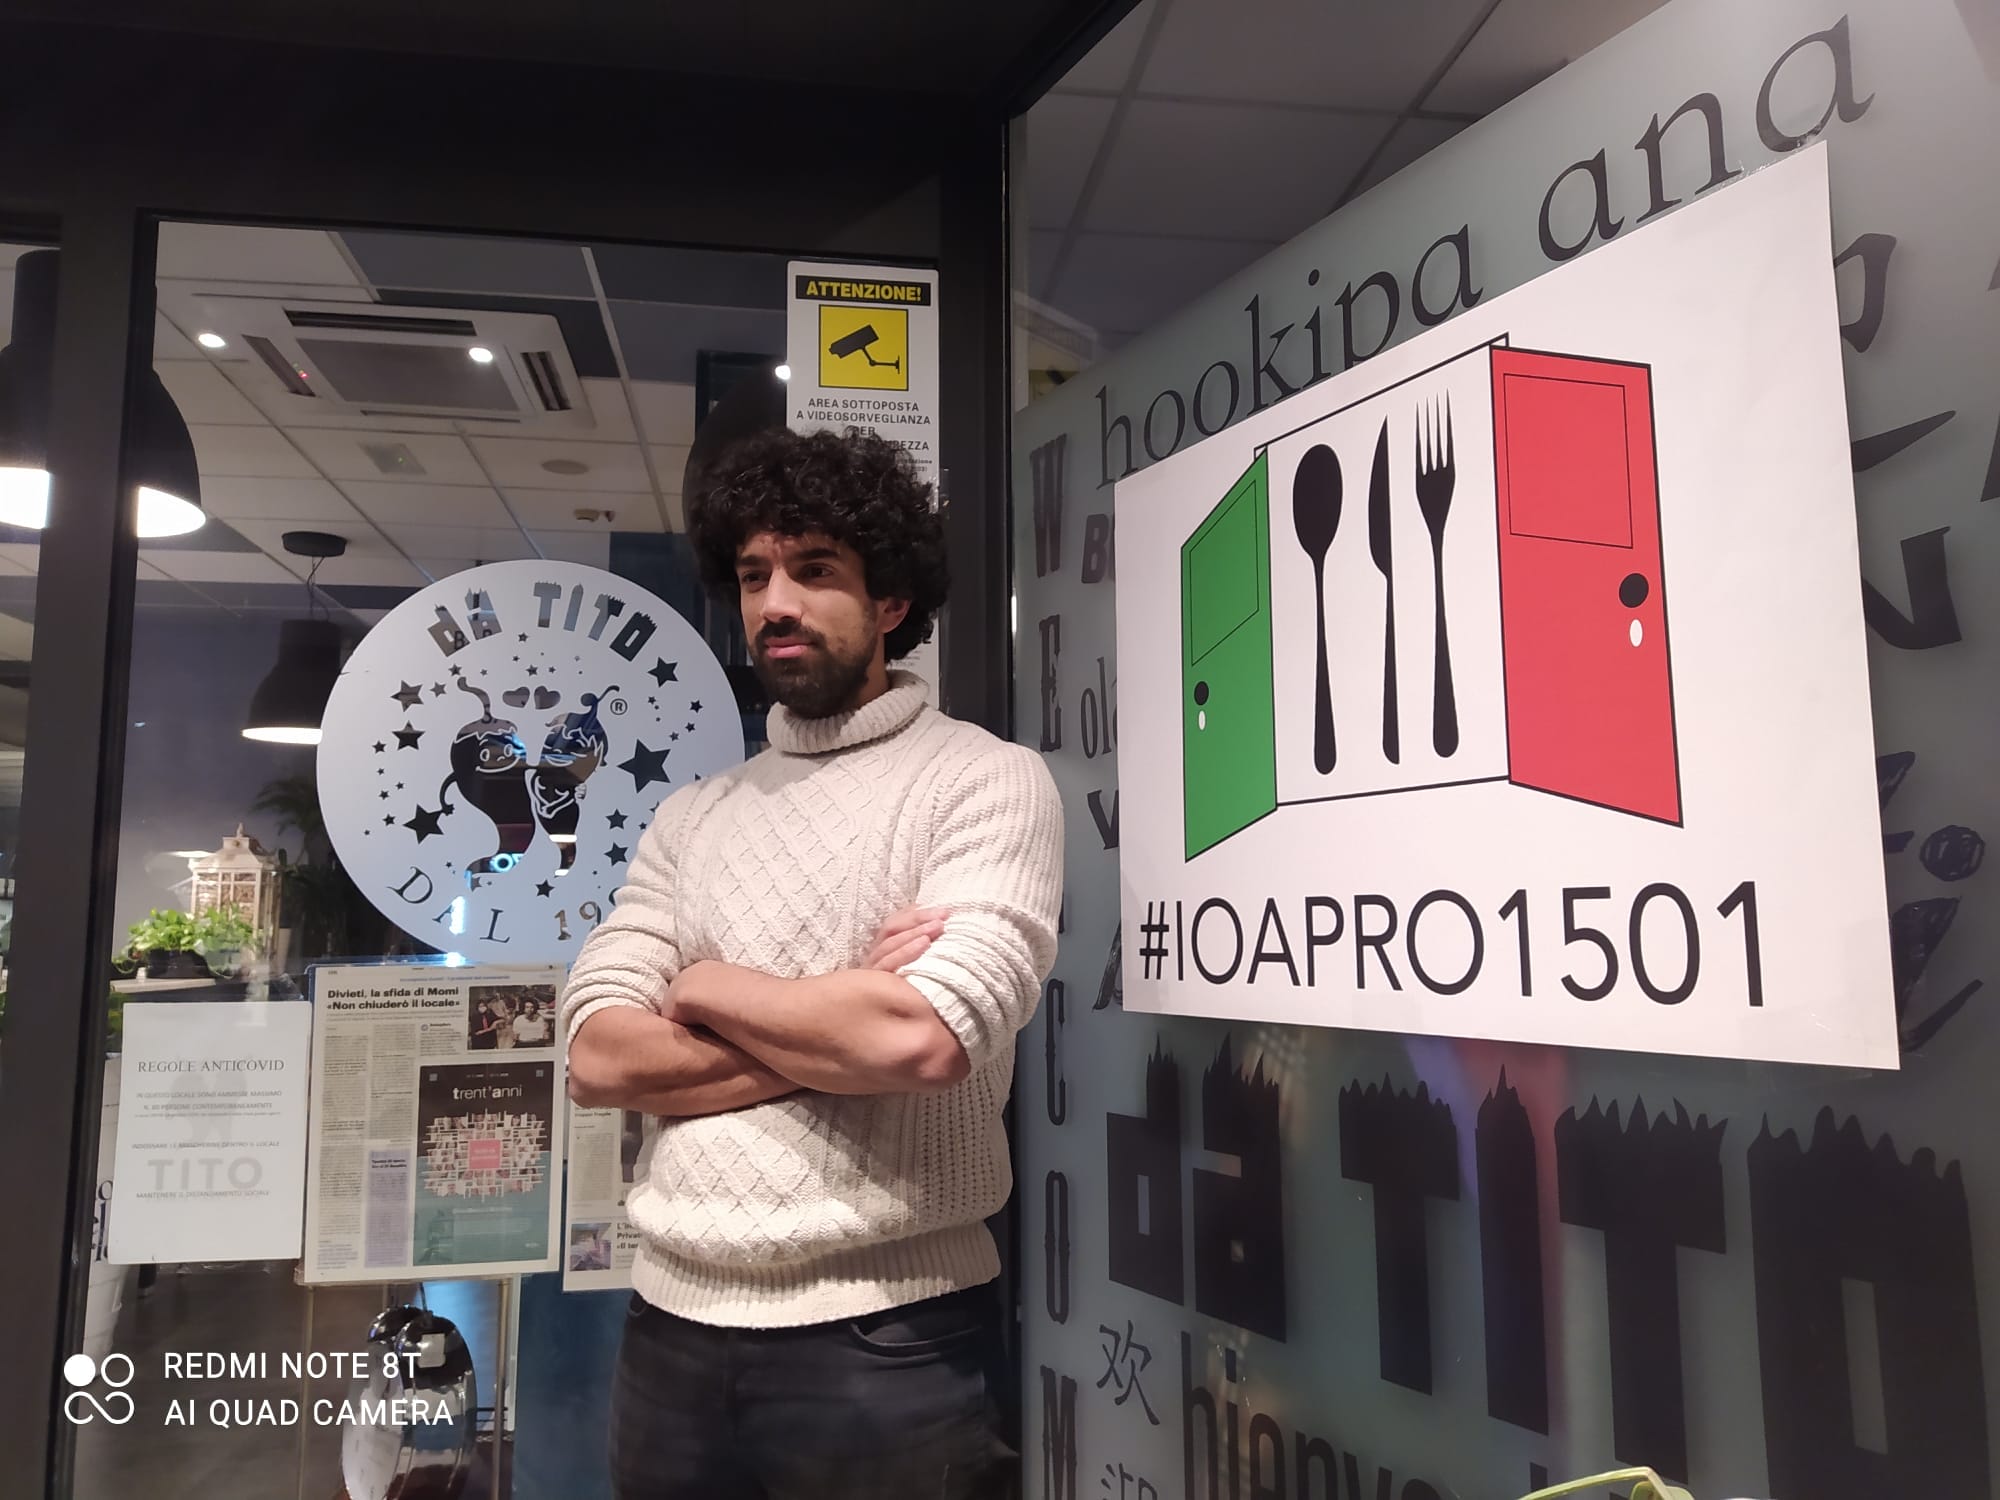 Dpcm: 31 a cena, chiuso 5 giorni locale Tito a Firenze, promotore di #ioapro